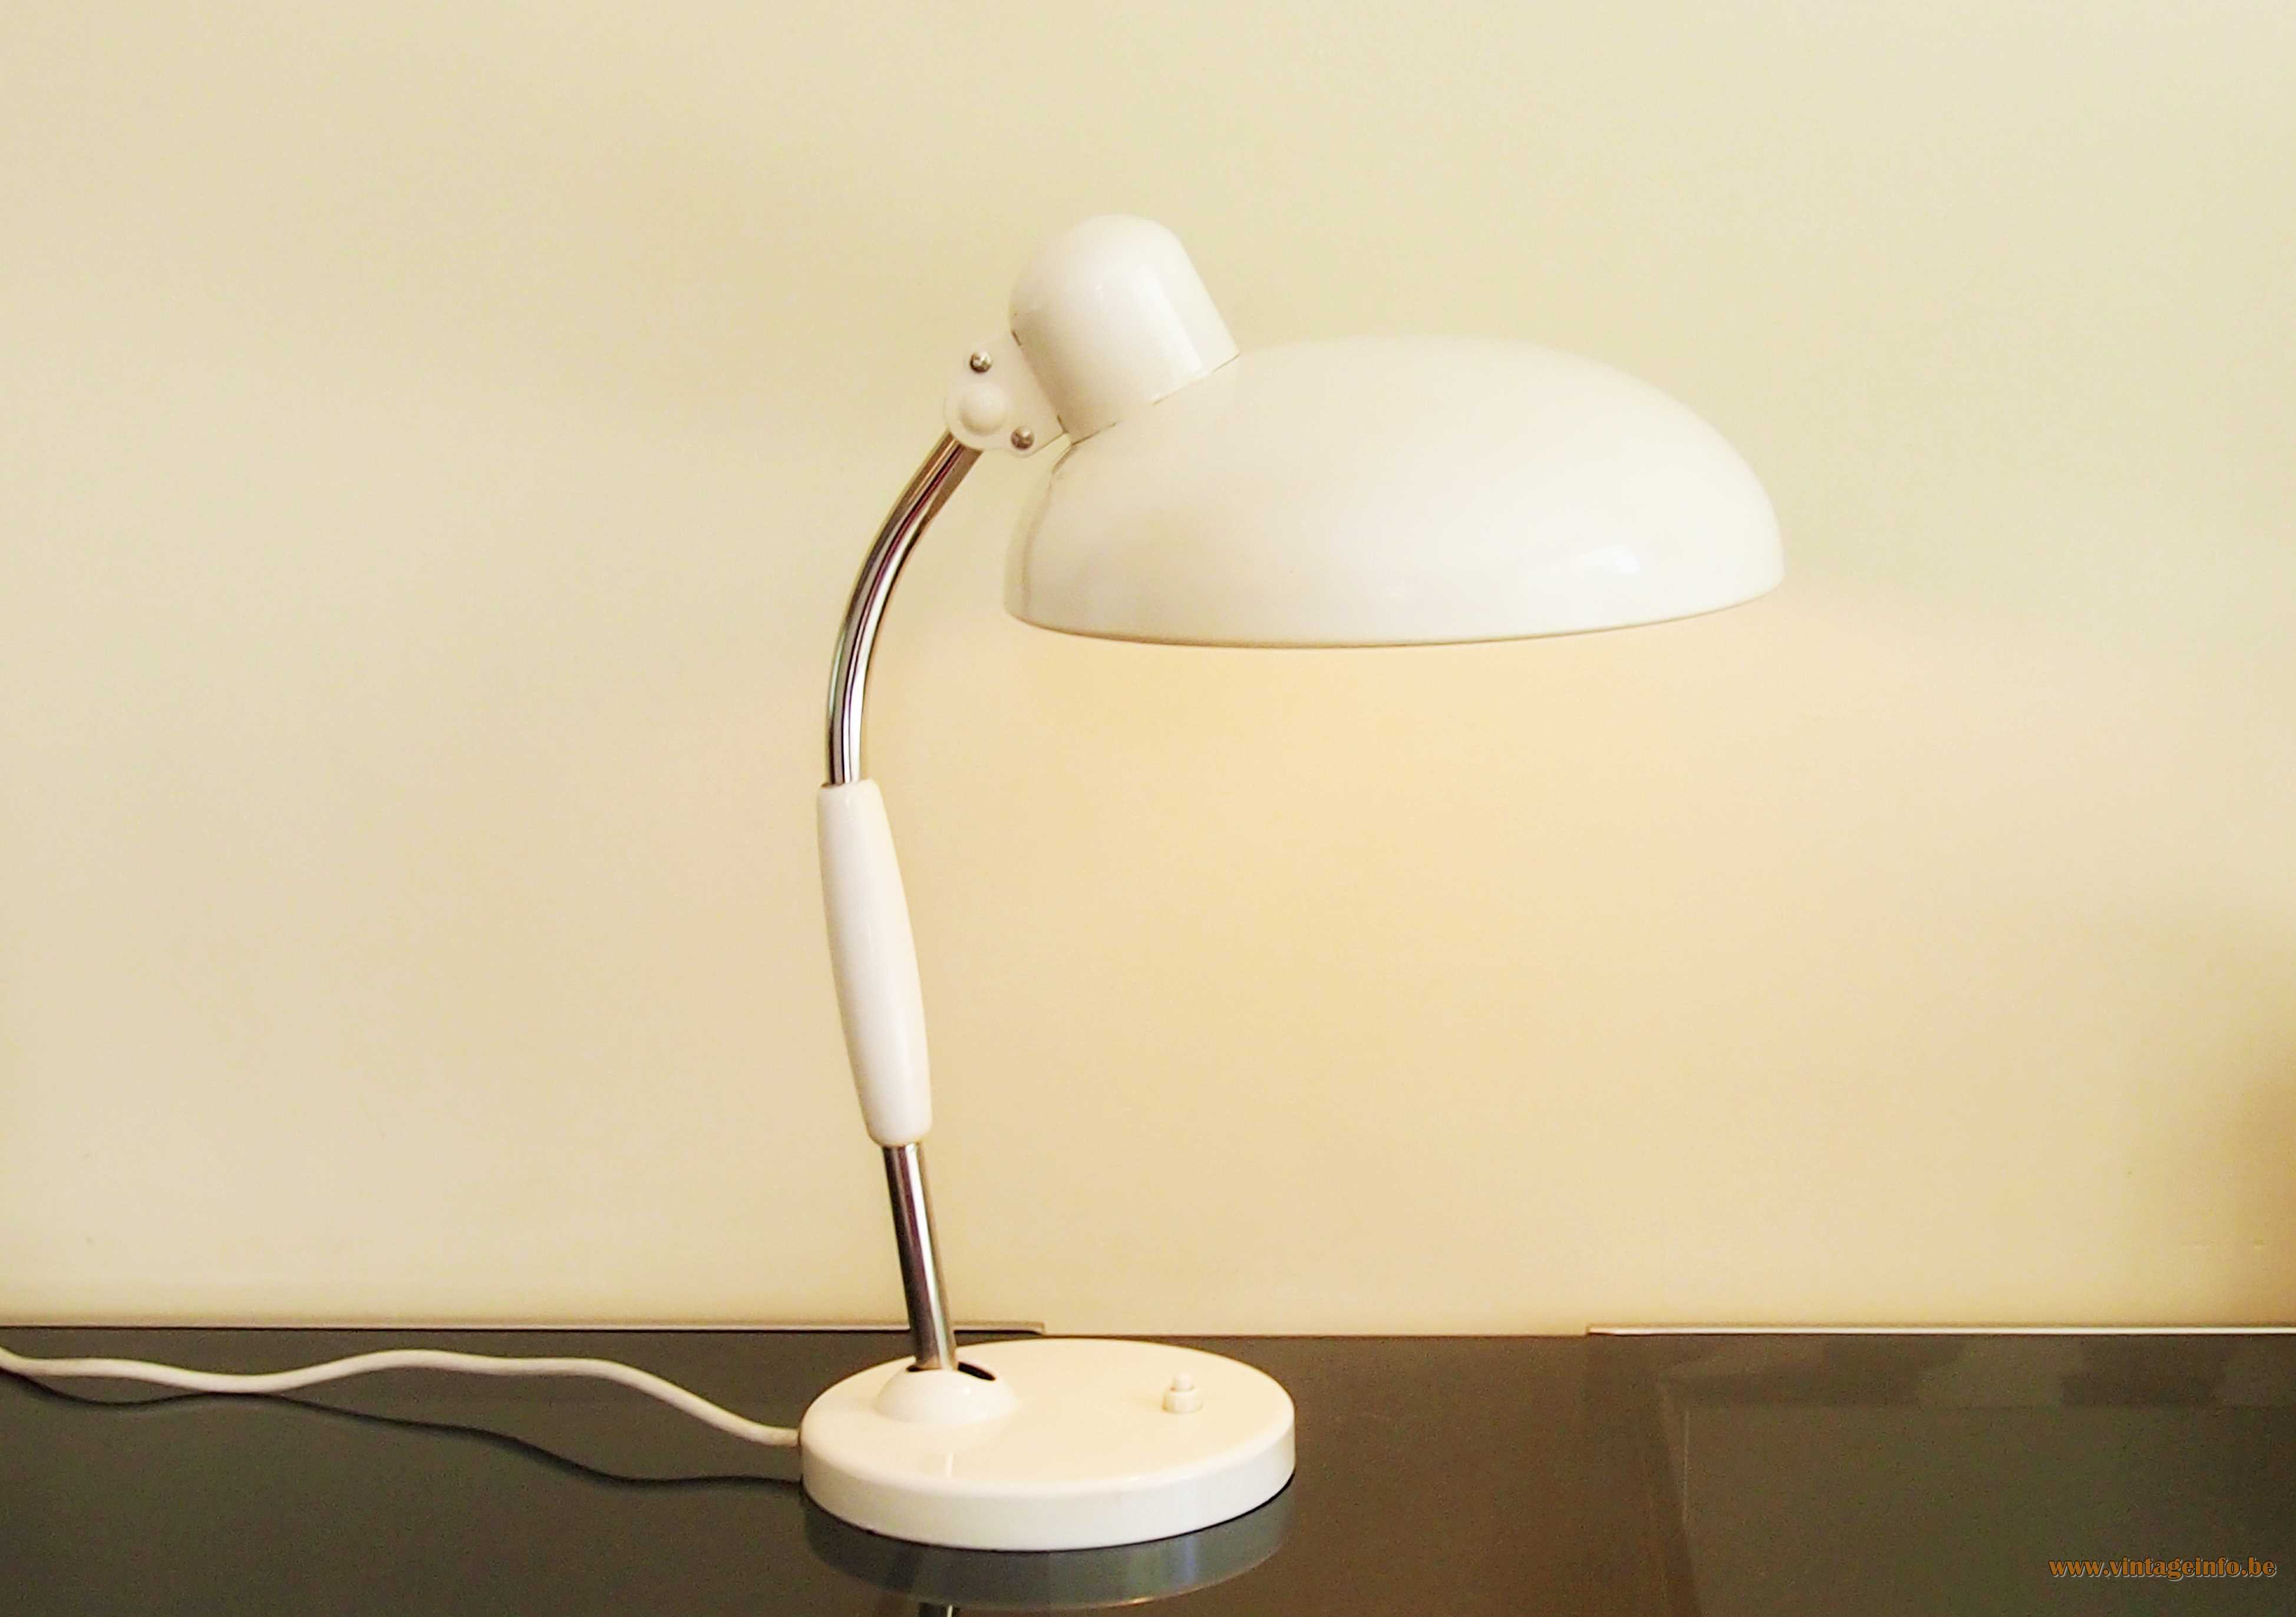 Christian Dell Koranda desk lamp 1933 design white metal base & lampshade chrome rod 1960s 1970s Austria